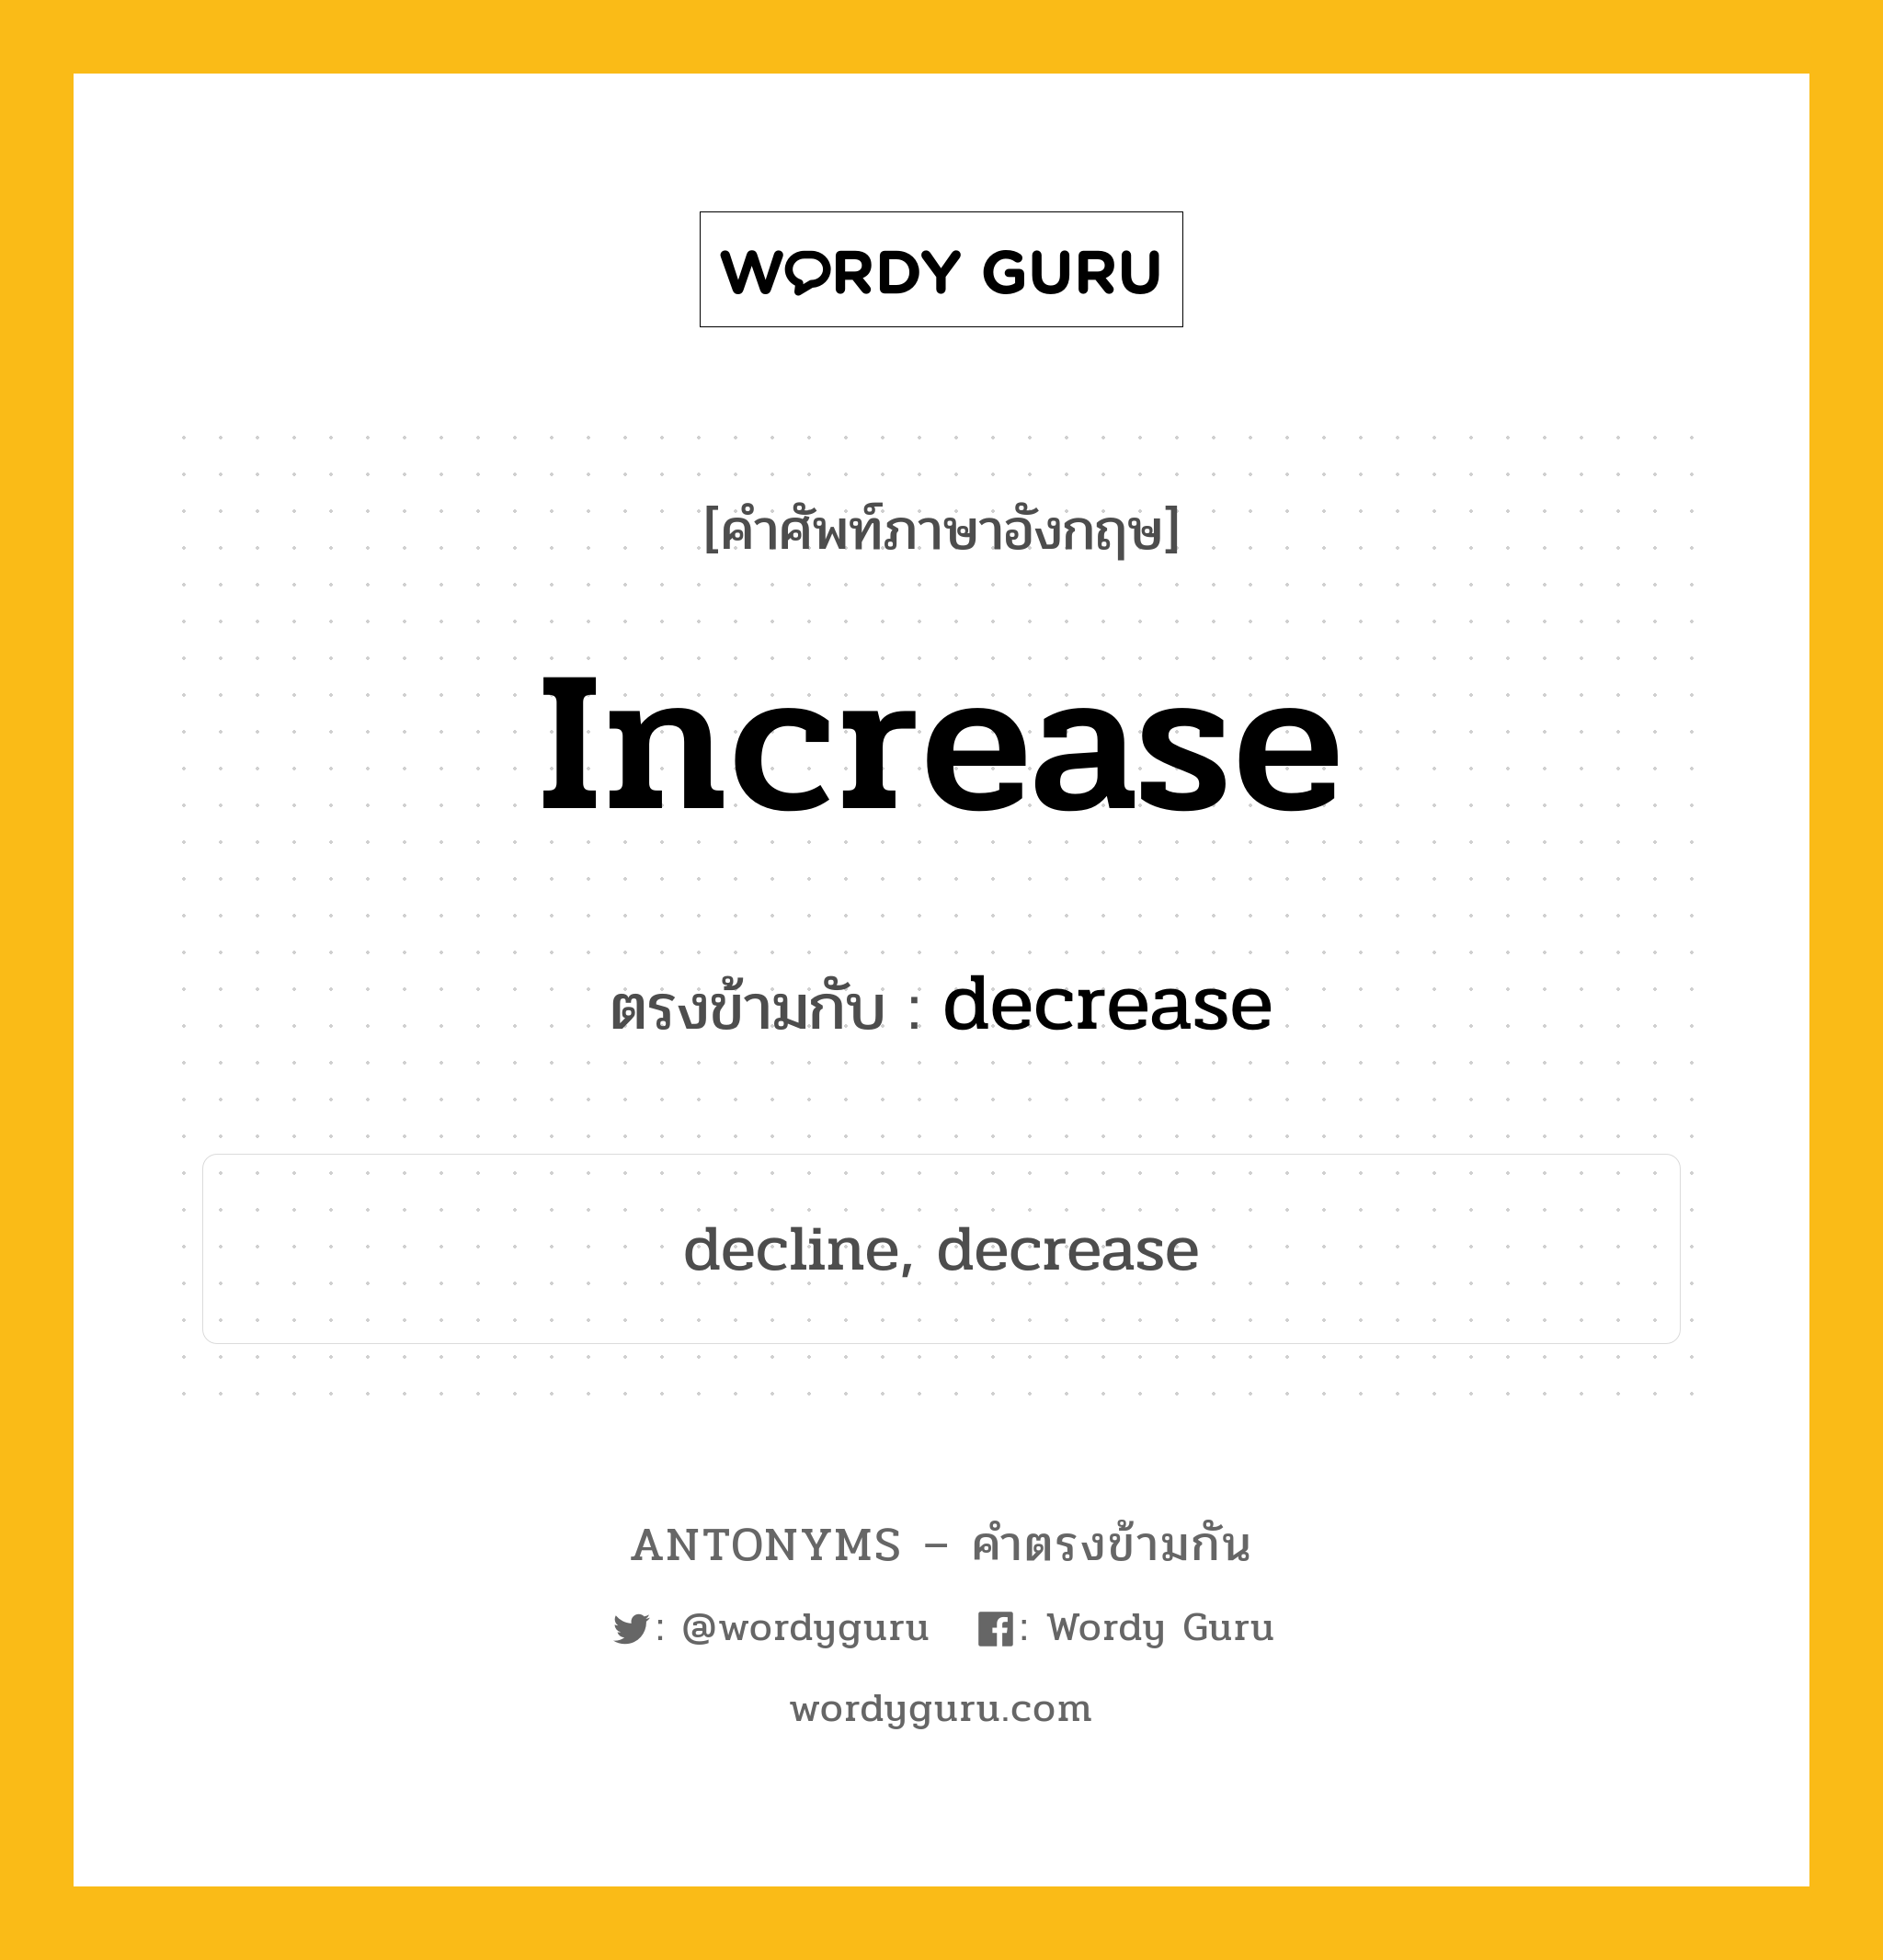 increase เป็นคำตรงข้ามกับคำไหนบ้าง?, คำศัพท์ภาษาอังกฤษ increase ตรงข้ามกับ decrease หมวด decrease